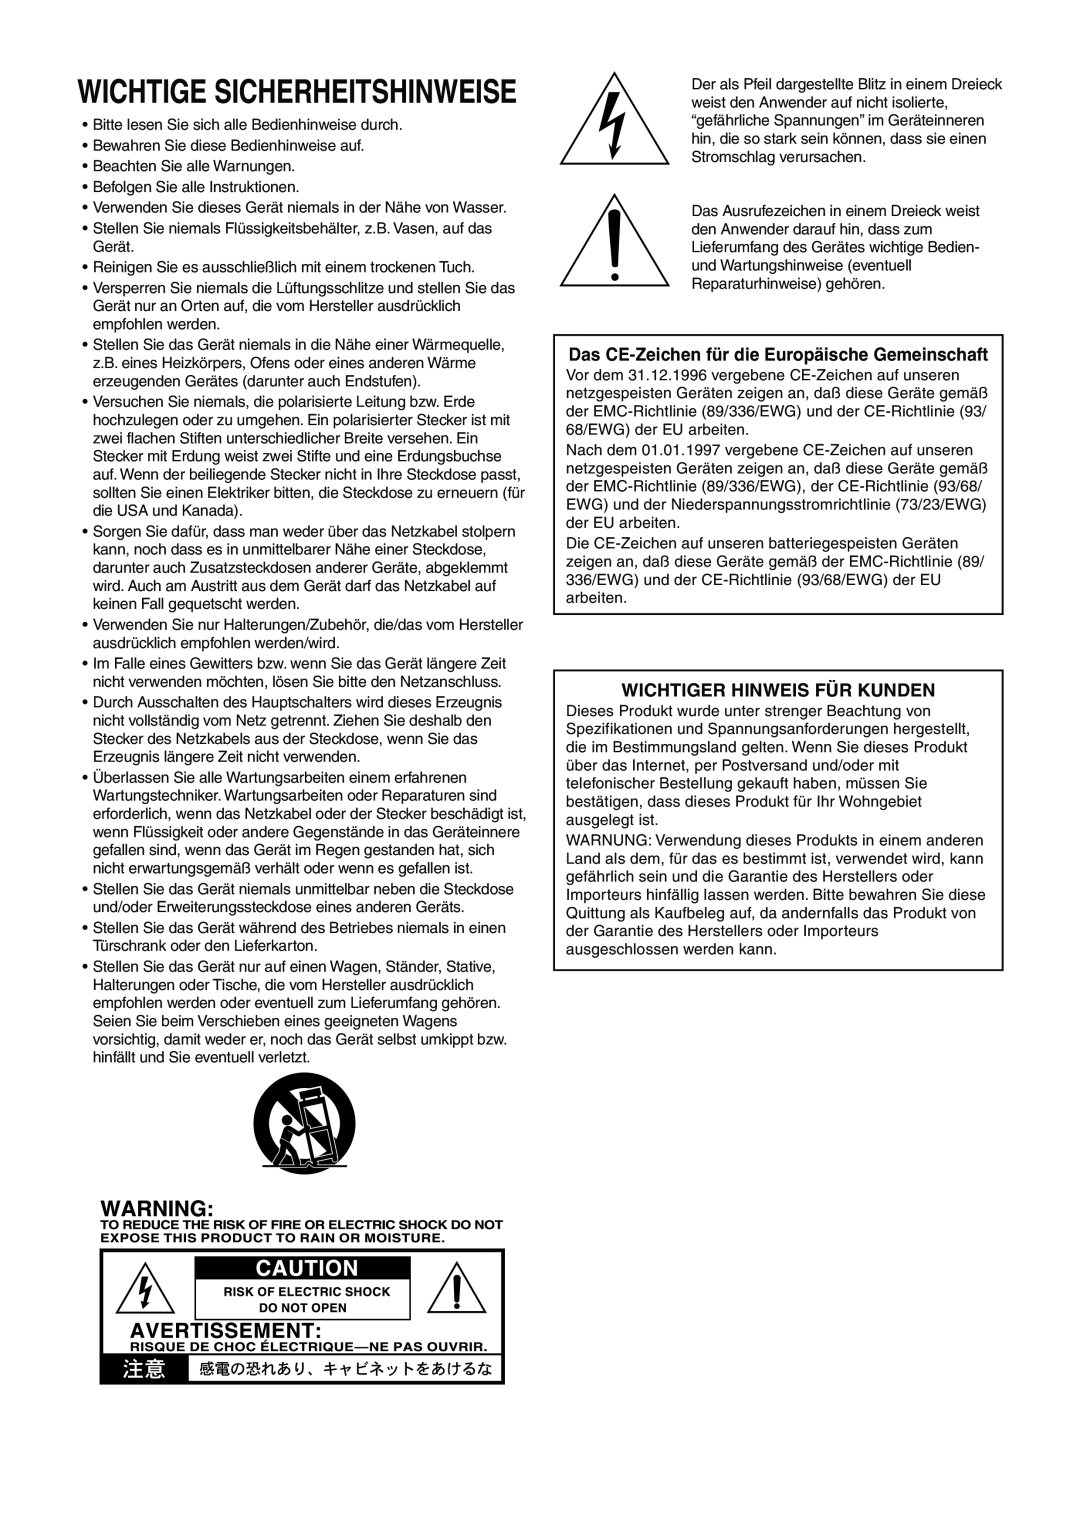 Vox 10 manual Wichtige Sicherheitshinweise, Das CE-Zeichenfür die Europäische Gemeinschaft, Wichtiger Hinweis Für Kunden 